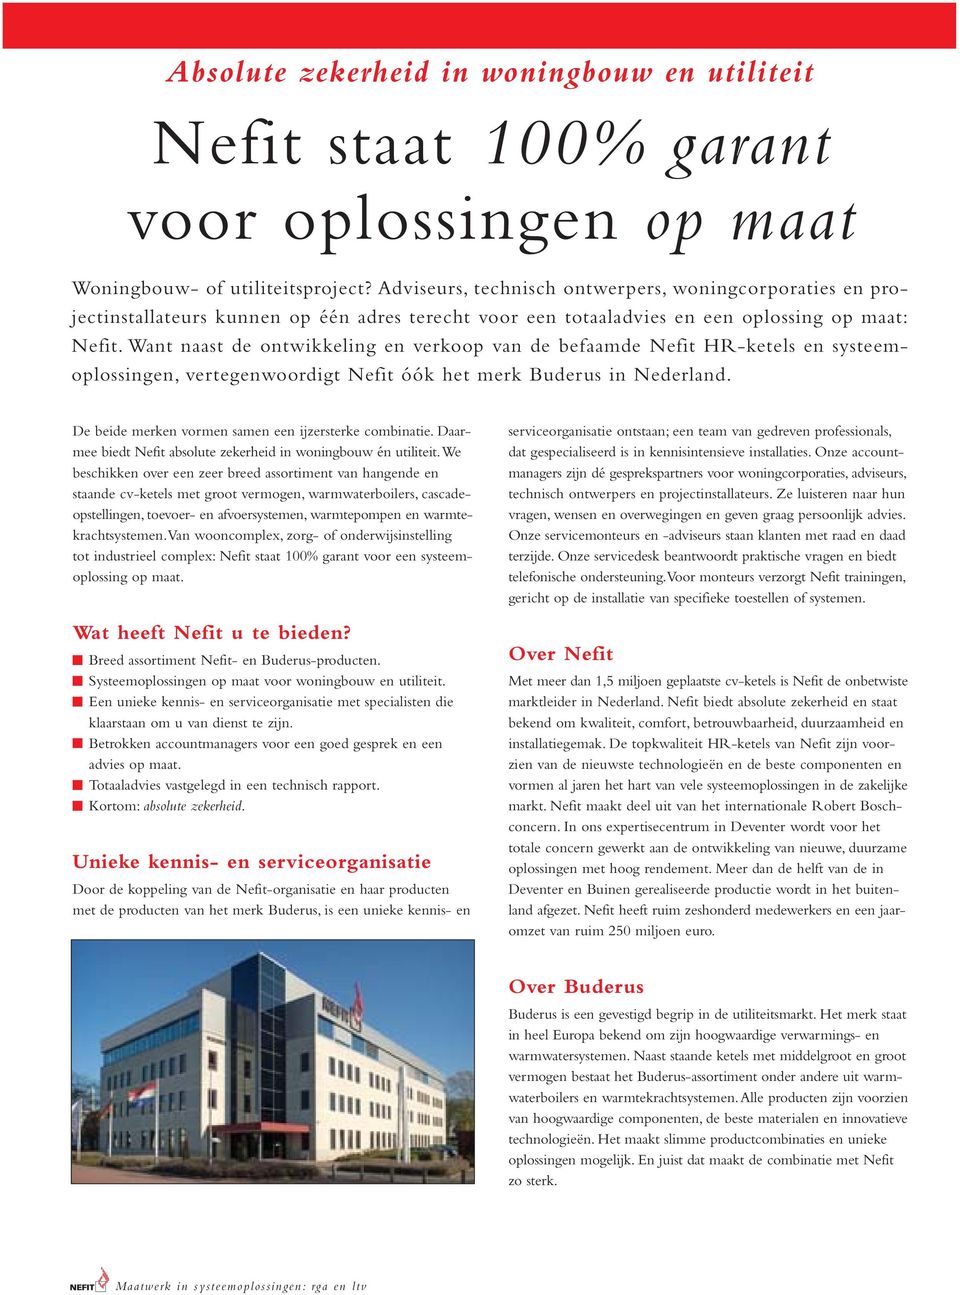 Want naast de ontwikkeling en verkoop van de befaamde Nefit HR-ketels en systeemoplossingen, vertegenwoordigt Nefit óók het merk Buderus in Nederland.